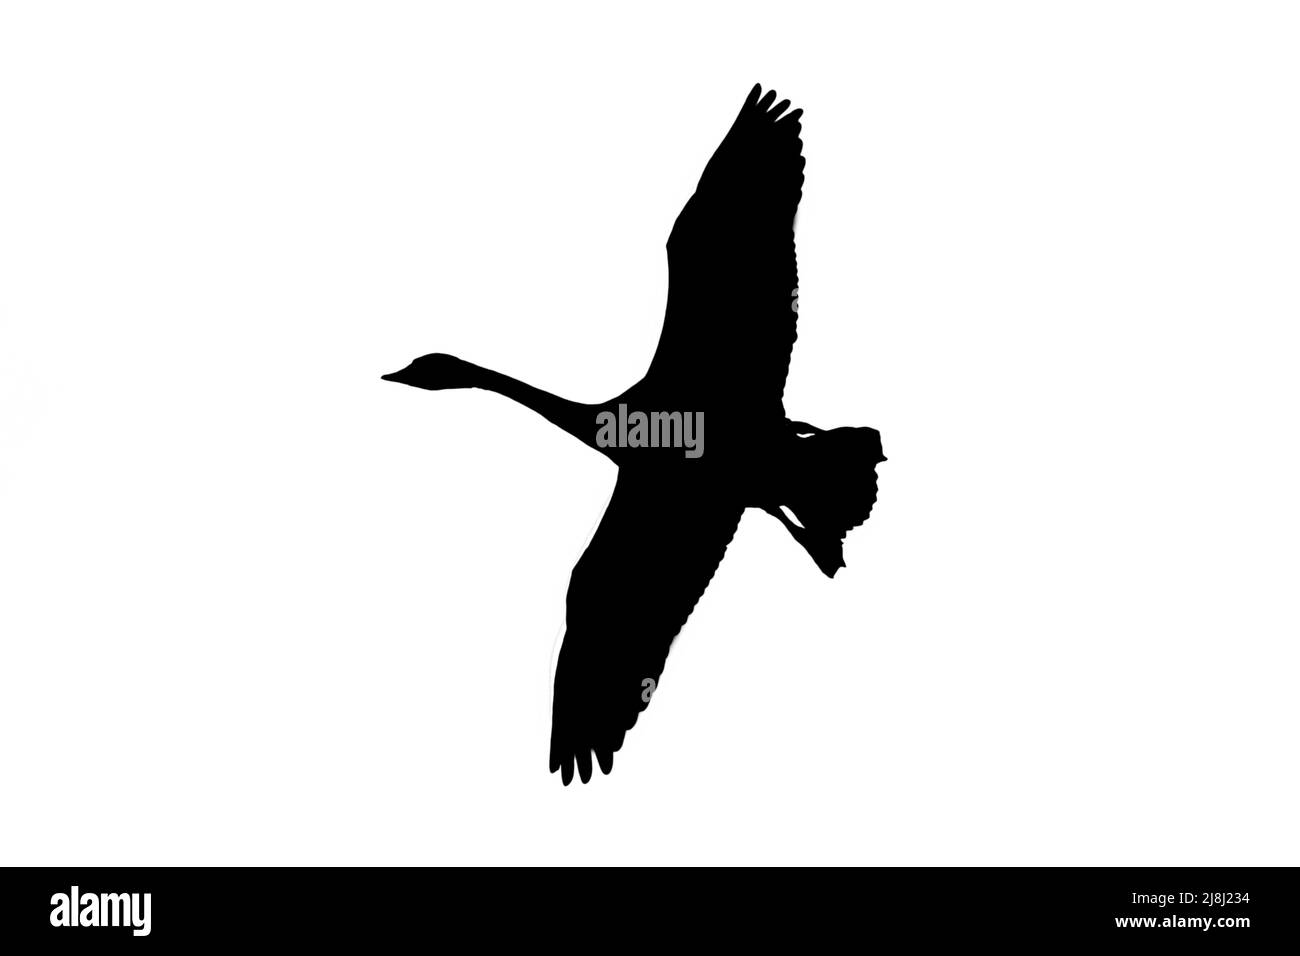 Silhouette des Tundra-Schwans / Bewicks Schwan (Cygnus bevickii) im Flug, umrissen vor weißem Hintergrund, um Flügel, Kopf- und Schwanzformen zu zeigen Stockfoto